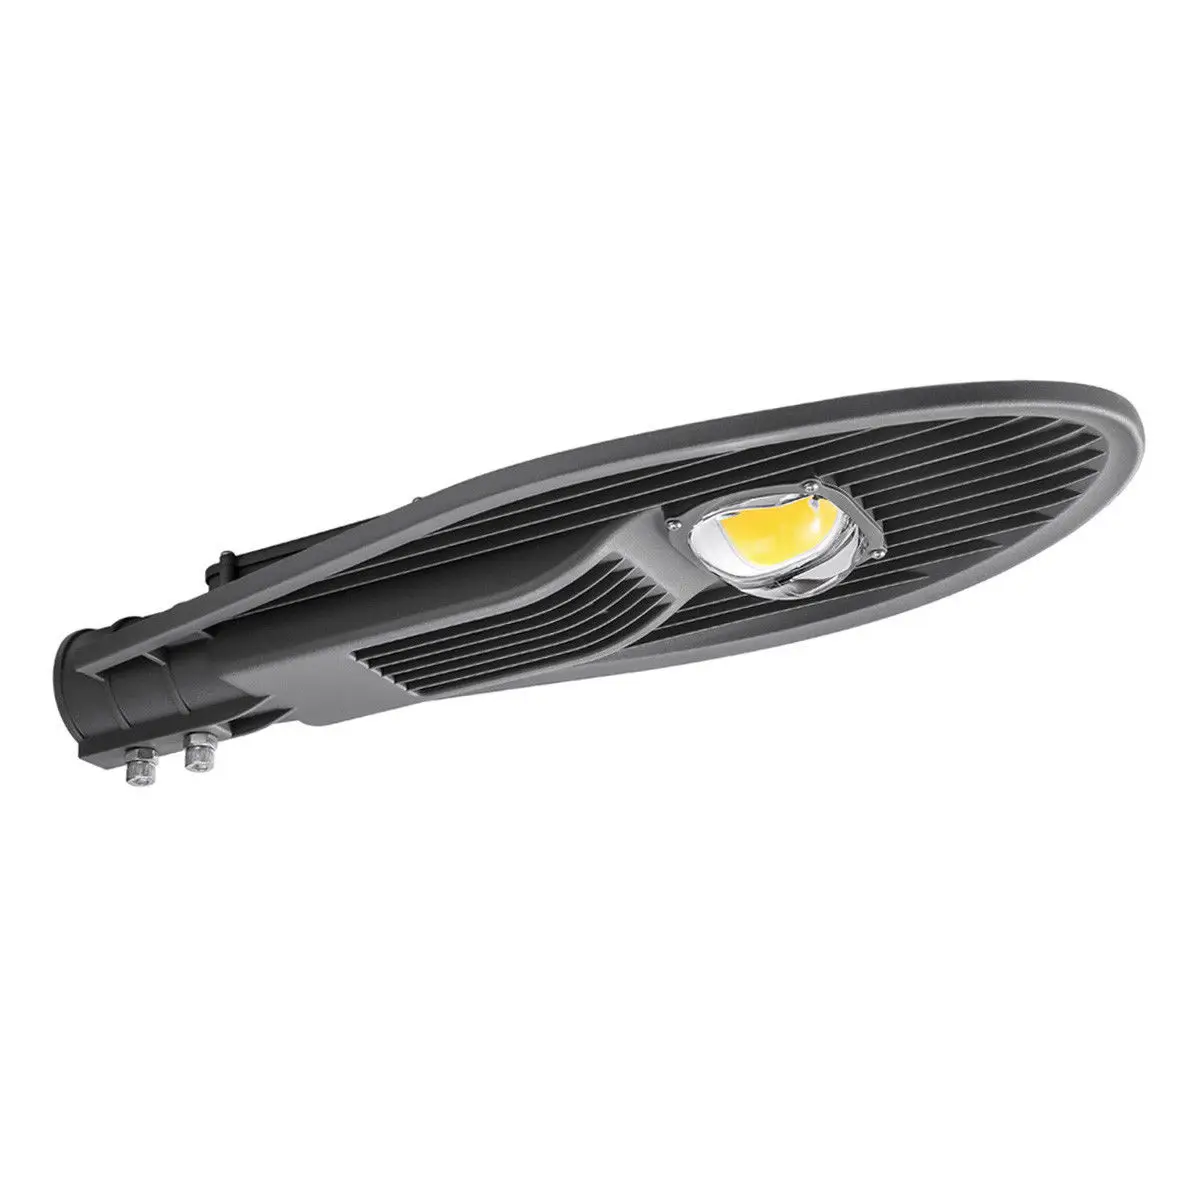 cobra head 150w road lighting lamps IP65 Waterproof Outdoor LED Street light fixtures